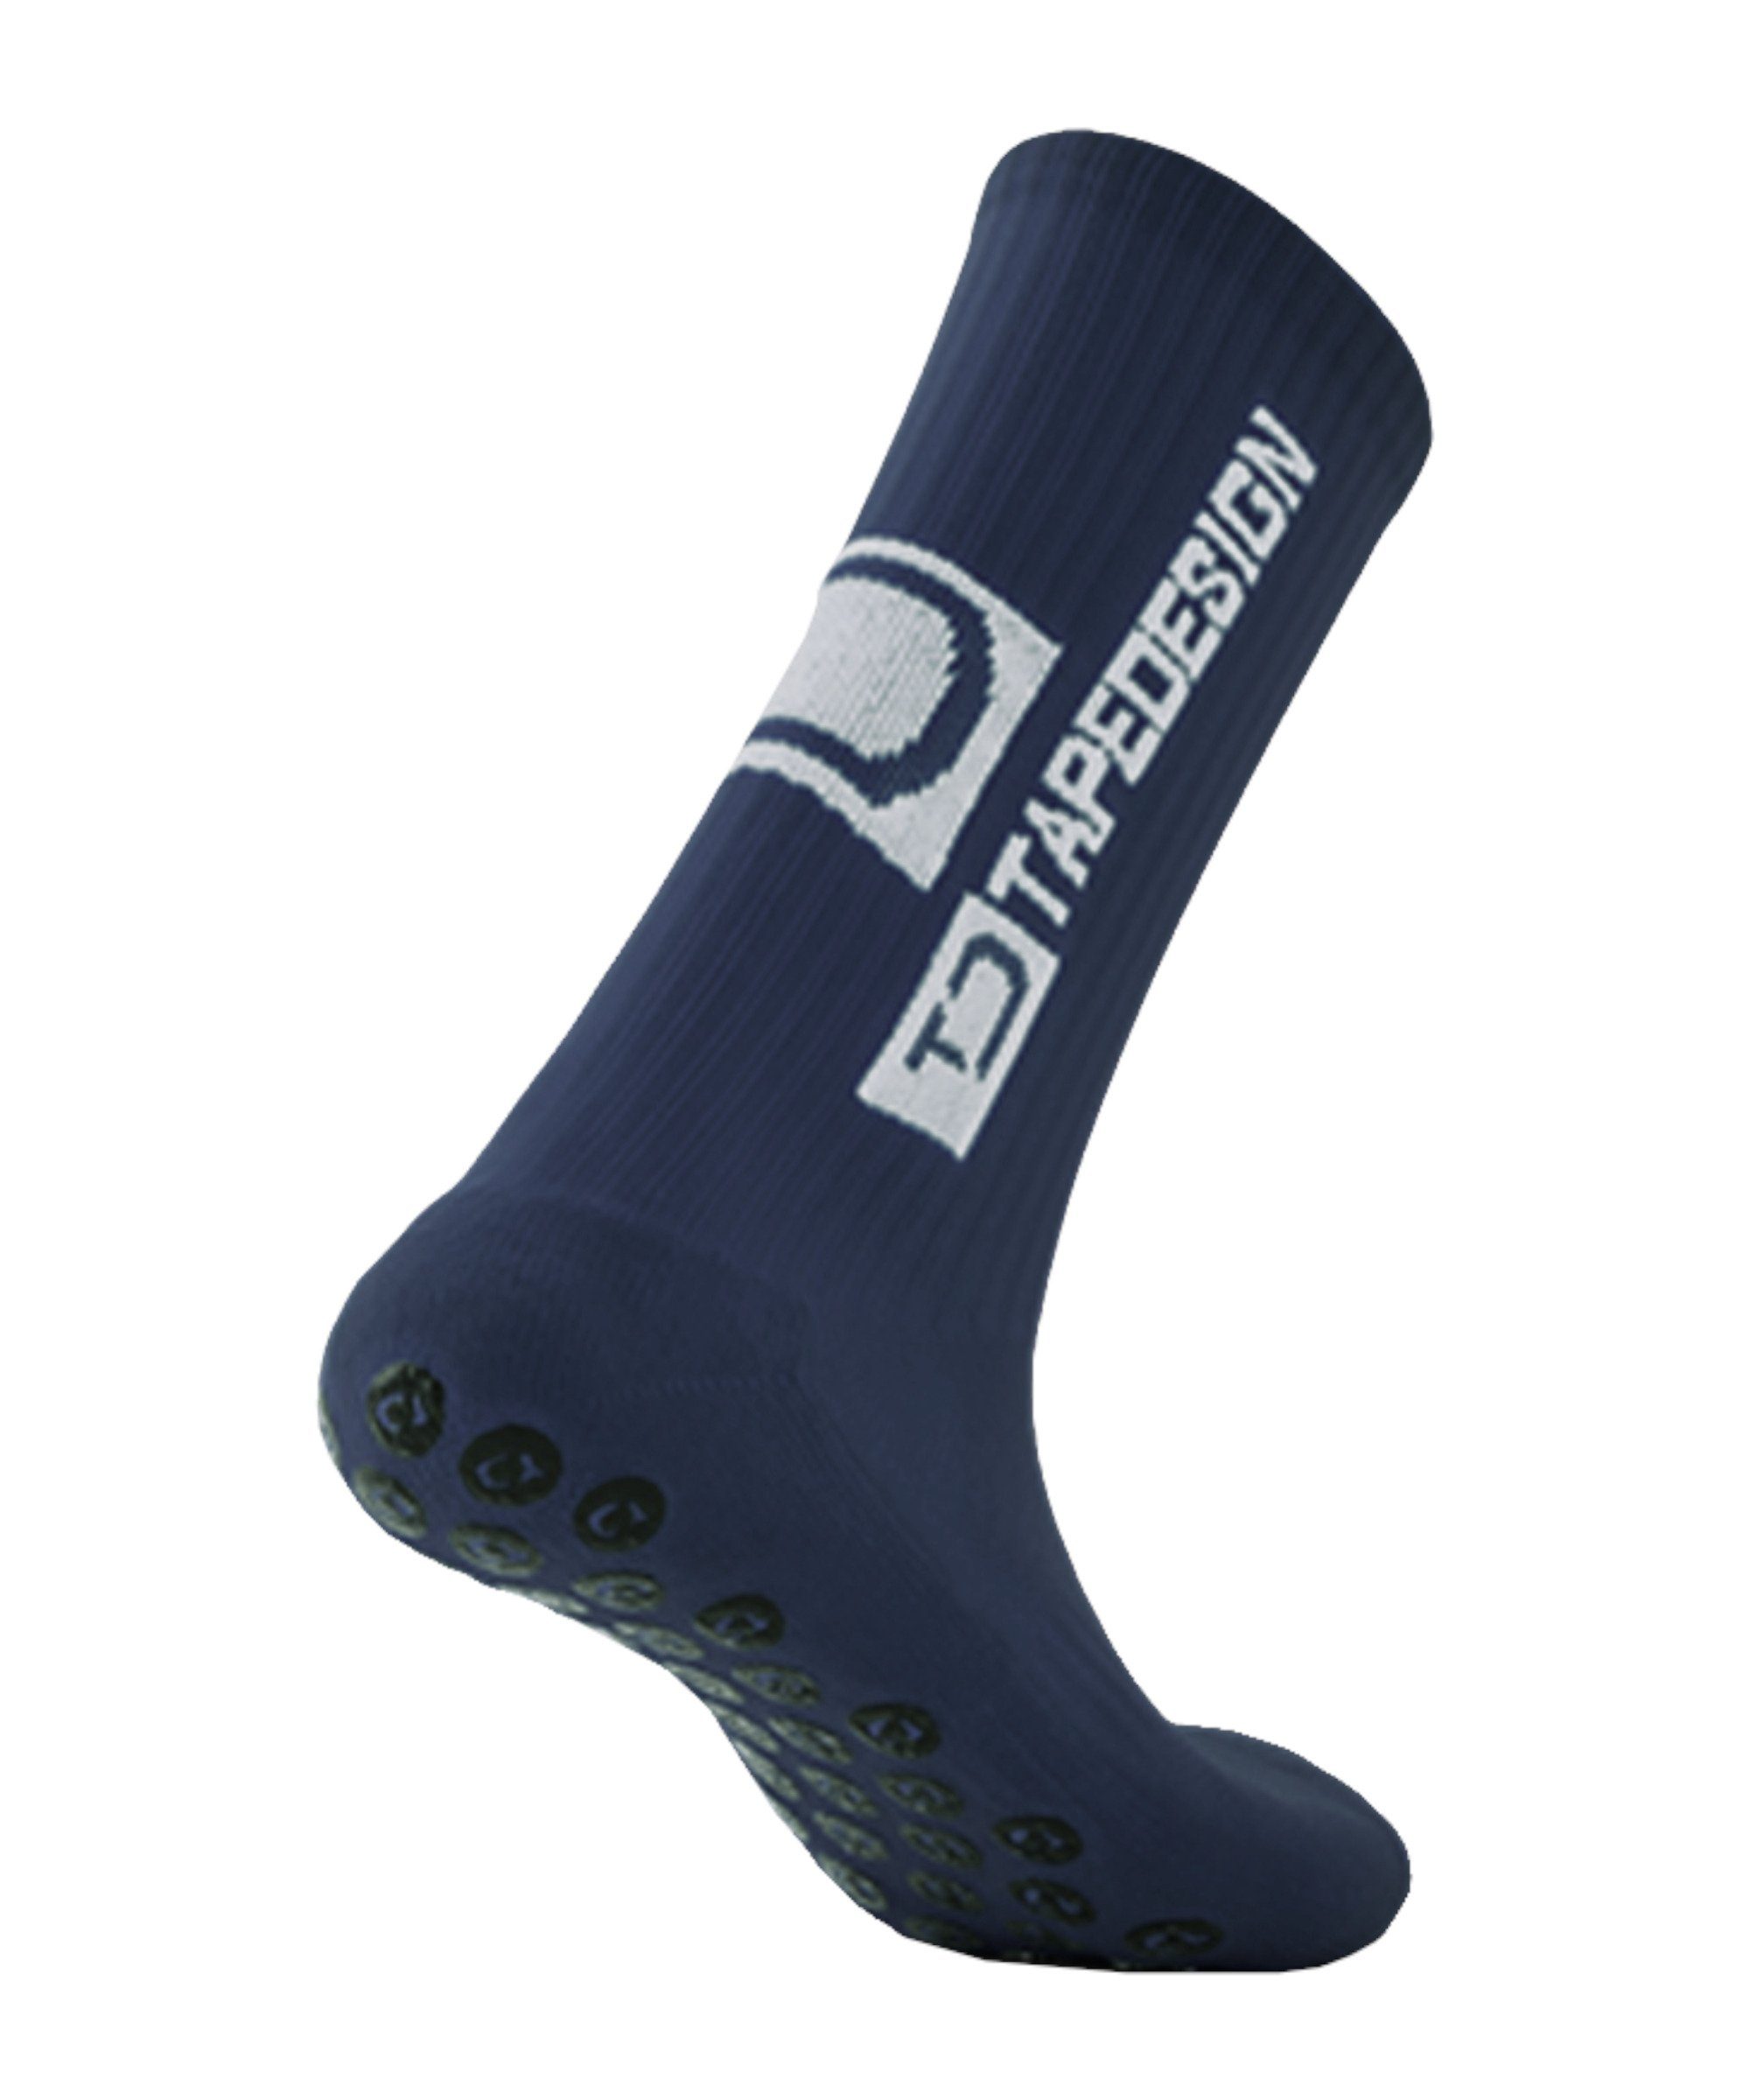 Gripsocks default blau Sportsocken Socken Tapedesign